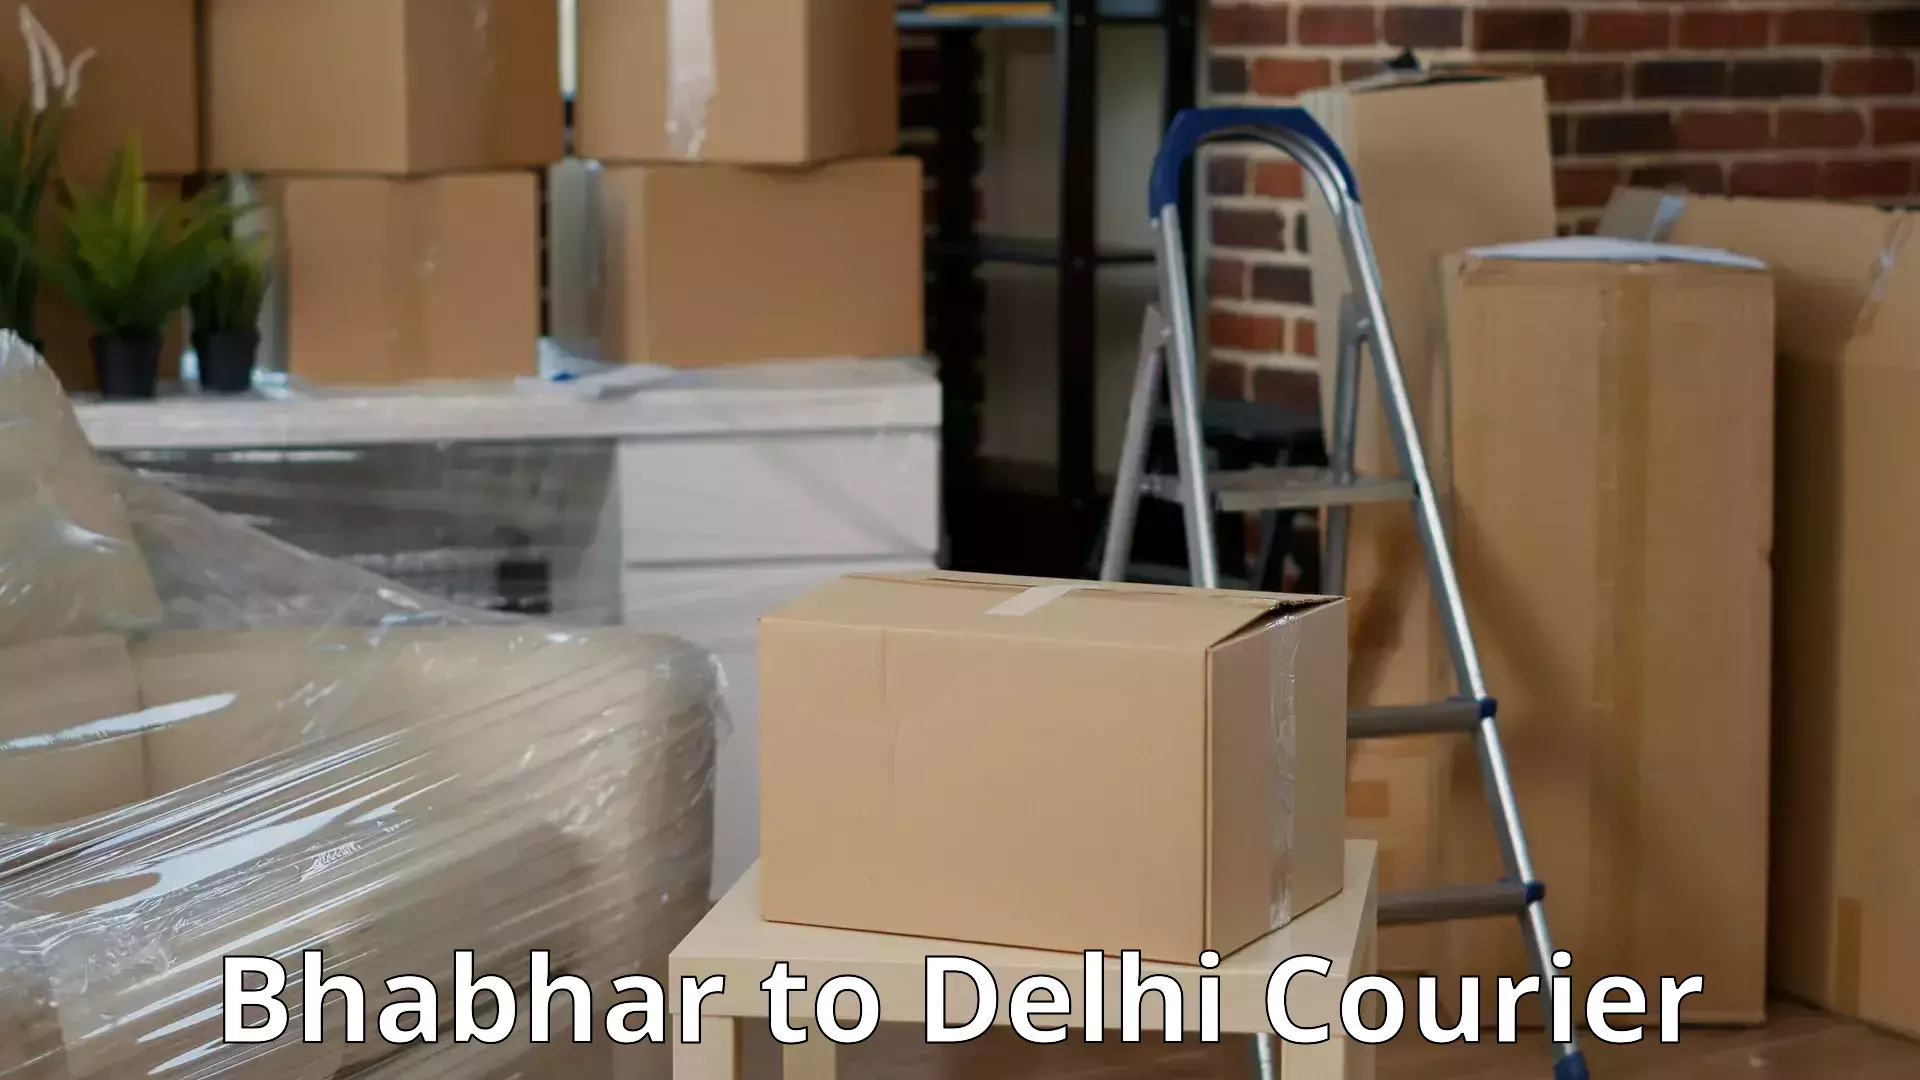 Residential furniture transport Bhabhar to Ashok Vihar